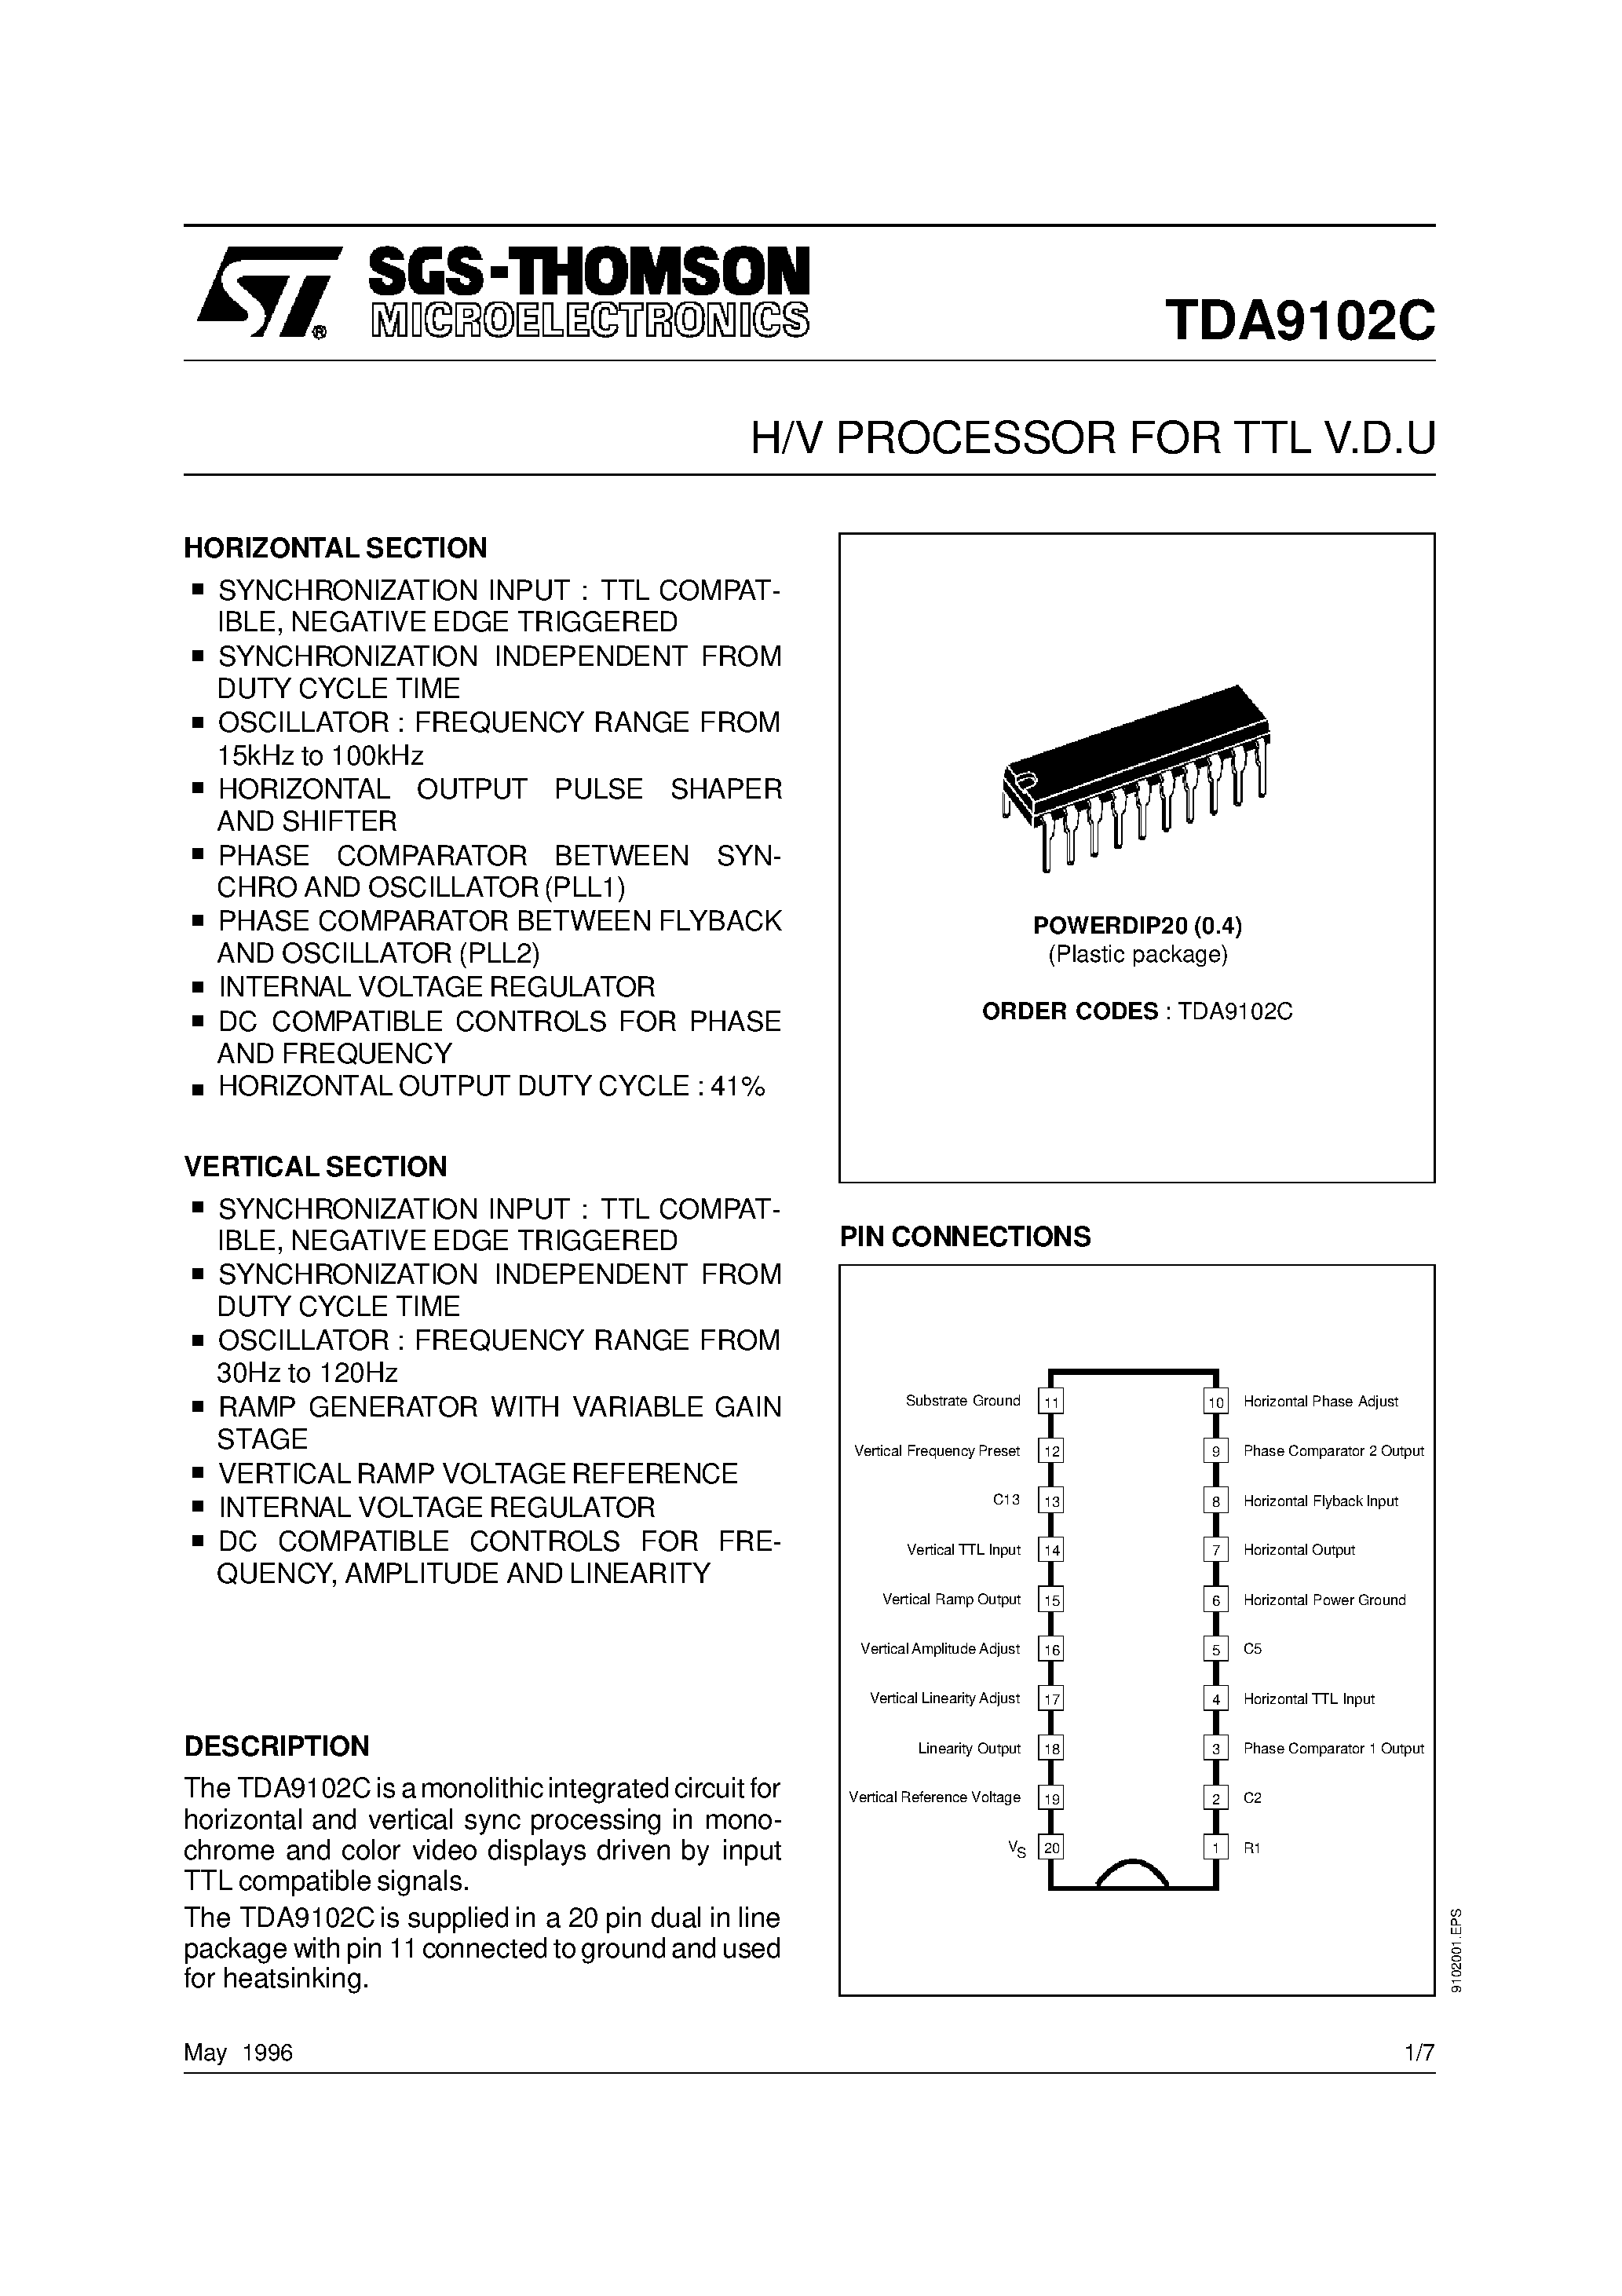 Даташит TDA9102C-H/V PROCESSOR FOR TTL V.D.U страница 1